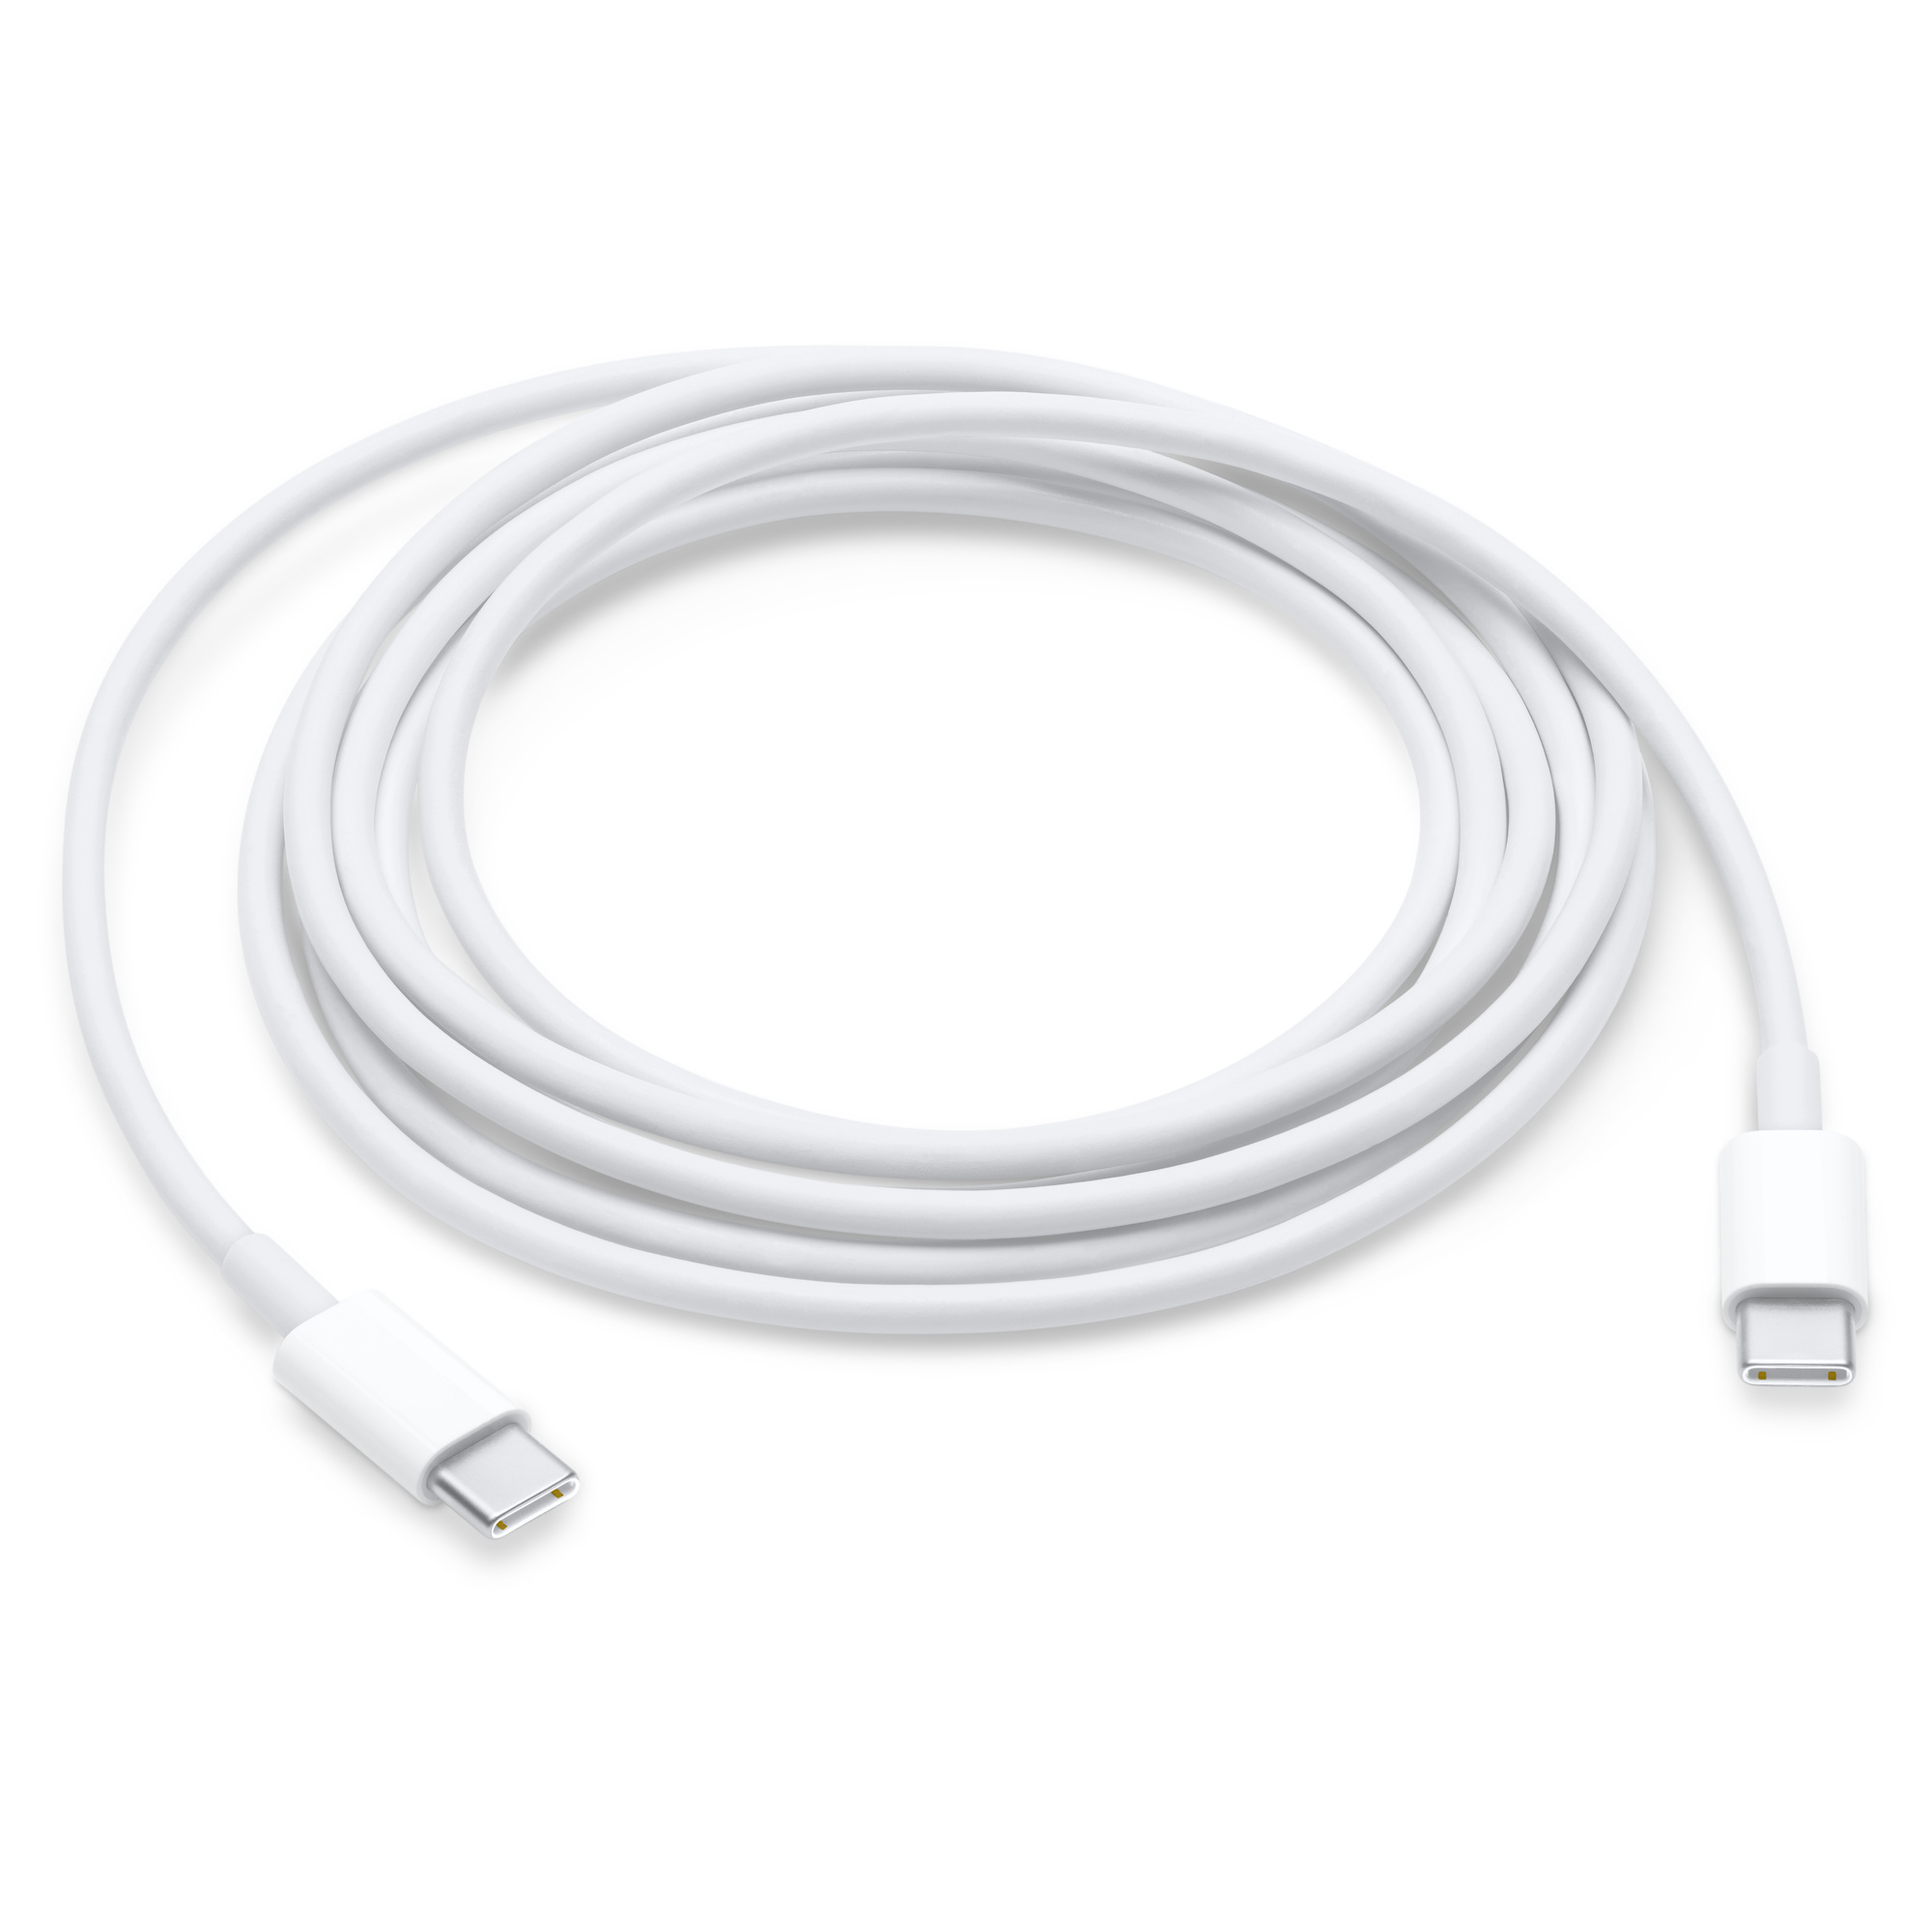 Купить Кабель Apple USB-C / USB-C. 2м, белый в Москве в сети магазинов iShop